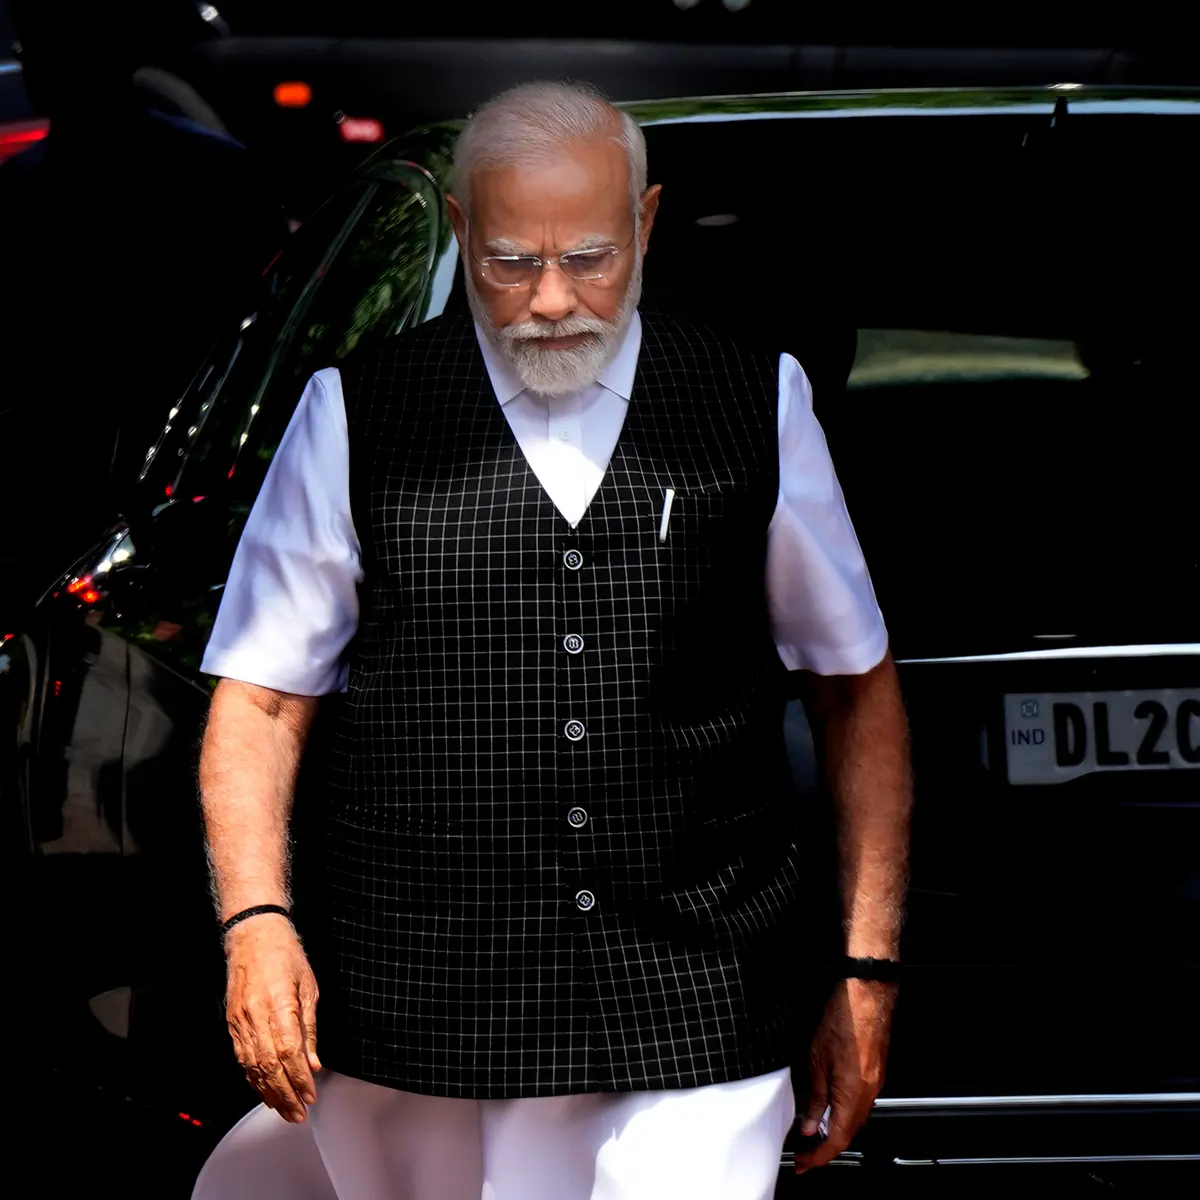 ಭಾರತದ G20 ಅಧ್ಯಕ್ಷತೆ ಎಲ್ಲವನ್ನೂ ಒಳಗೊಳ್ಳುವ, ನಿರ್ಣಾಯಕ ಮತ್ತು ಕಾರ್ಯ-ಆಧಾರಿತ: ಪ್ರಧಾನಿ ಮೋದಿ